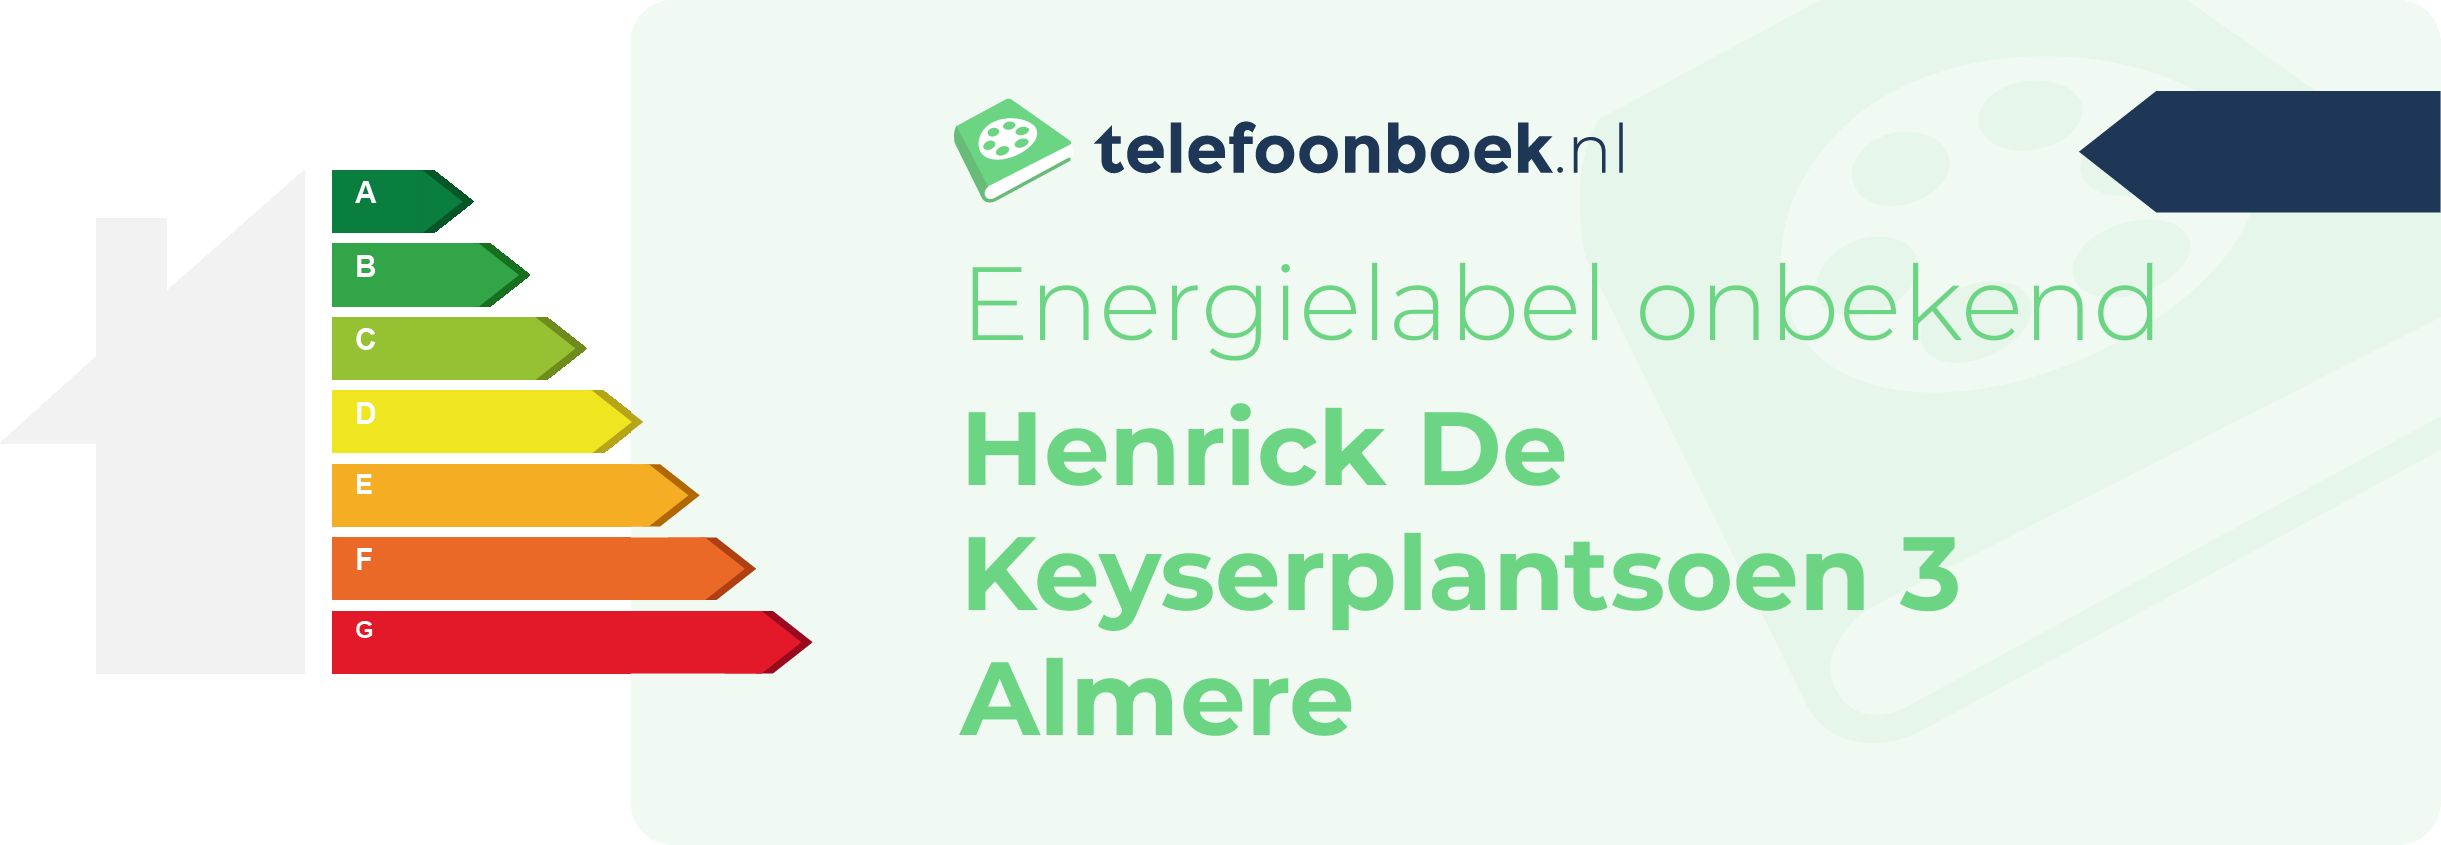 Energielabel Henrick De Keyserplantsoen 3 Almere